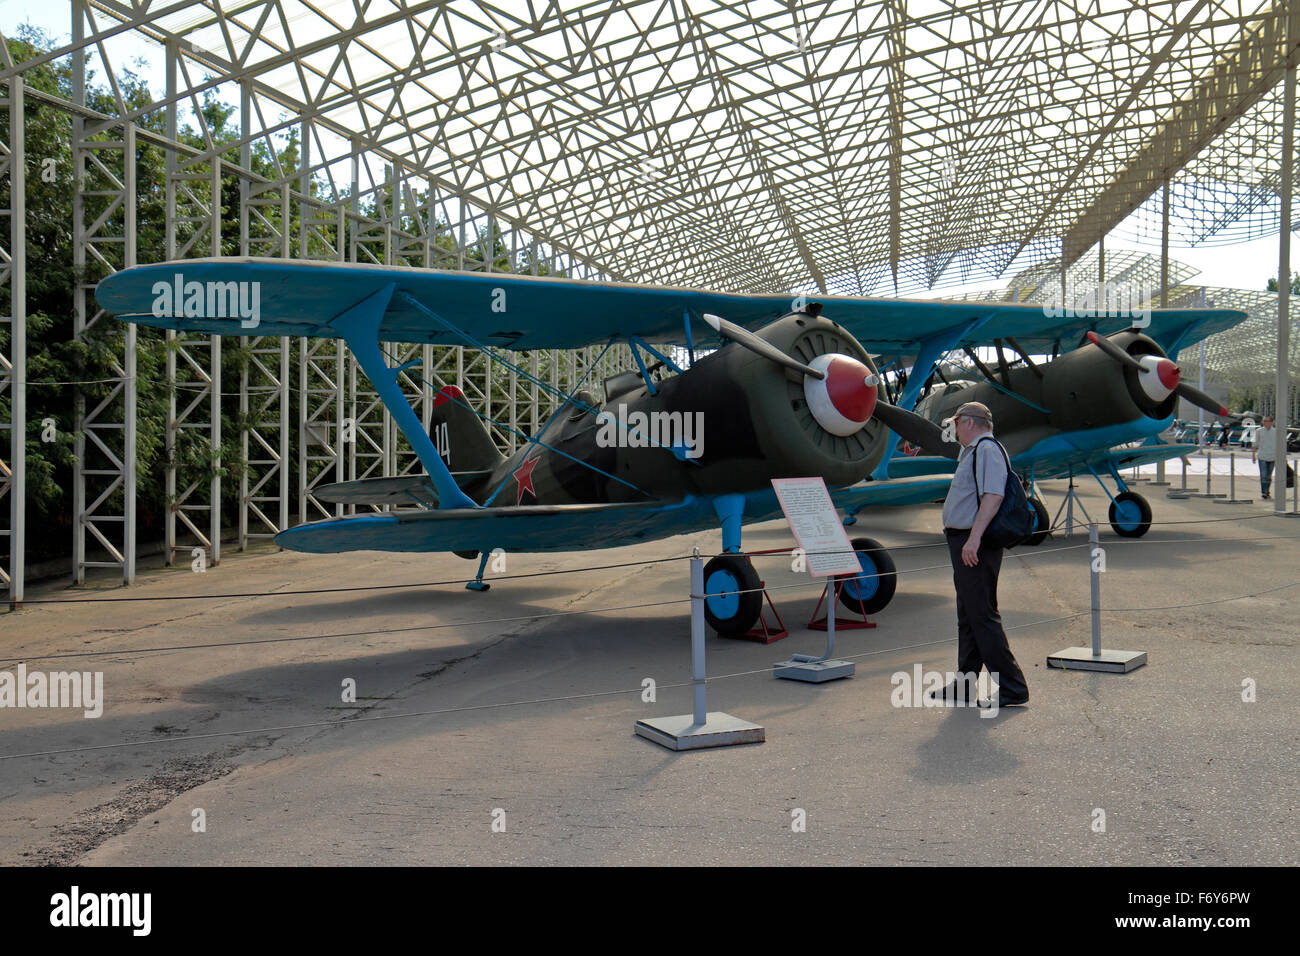 Je soviétique-15bis avion de chasse (maquette) à l'Exposition de matériel militaire dans la région de Park Pobedy, Moscou, Russie. Banque D'Images